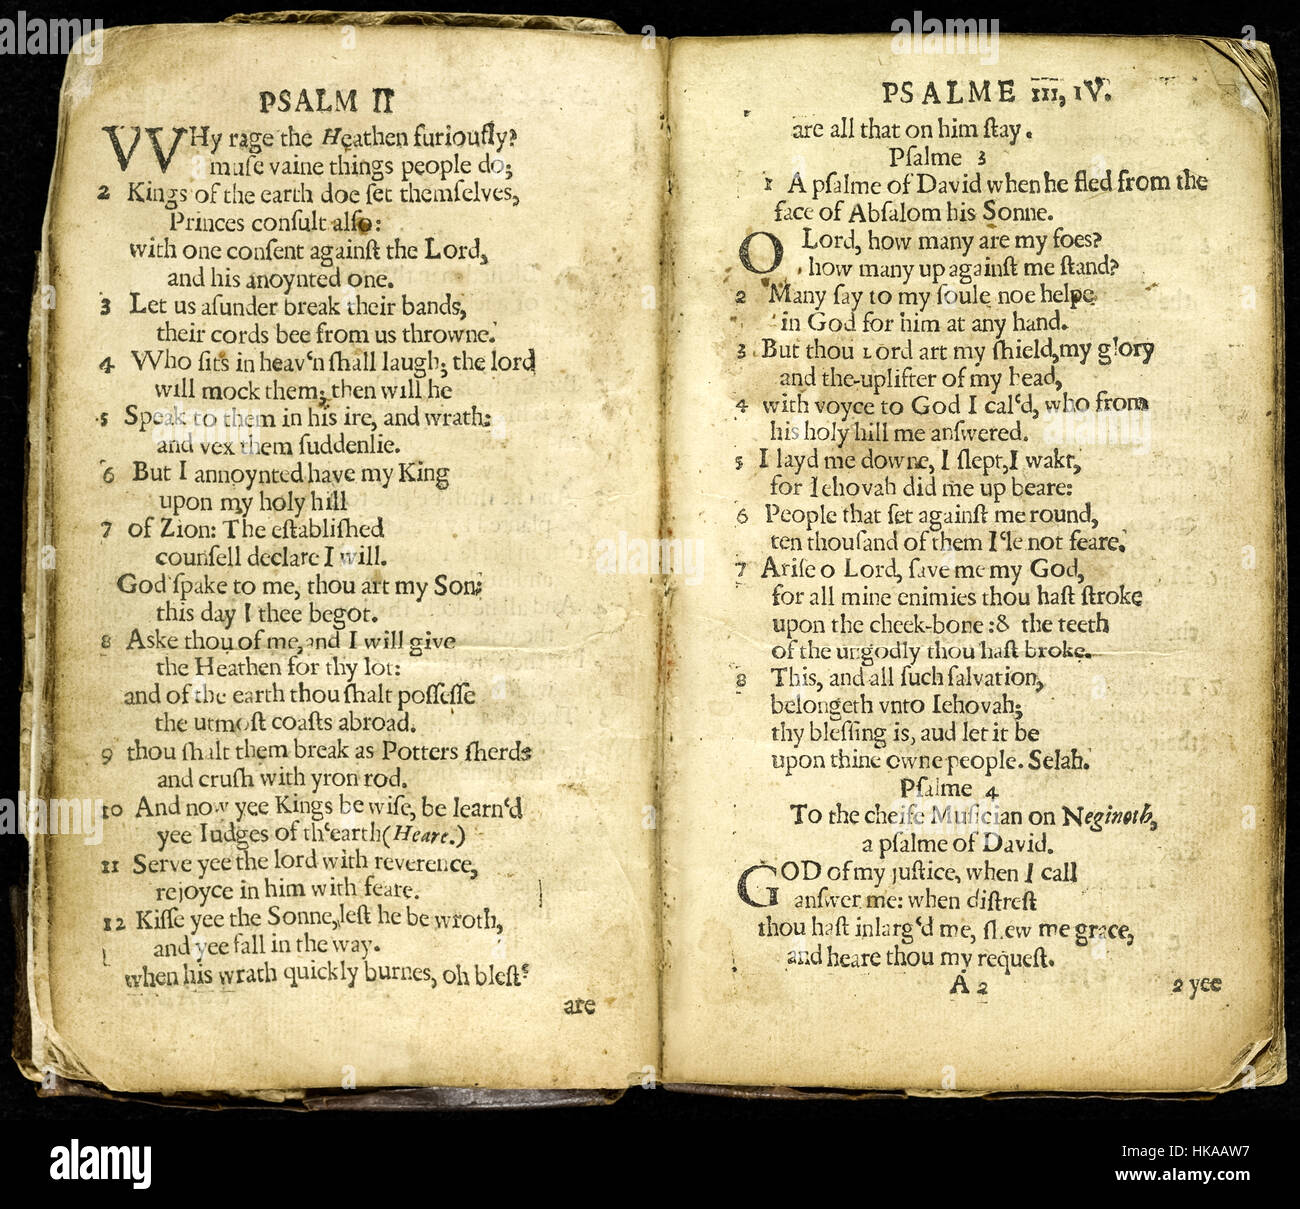 "Die ganze Booke of Psalmes (besser bekannt als das" Bay Psalm Book") eine neue Übersetzung von Richard Mather(1596-1669), Thomas Mayhew (1593-1682), und John Eliot (1604-1690), von Stephen Daye (1594-1668) den ersten nordamerikanischen Drucker gedruckt. Veröffentlicht in Cambridge, Massachusetts im Jahre 1640 war dies das erste Buch gedruckt in Britisch-Nordamerika. Stockfoto